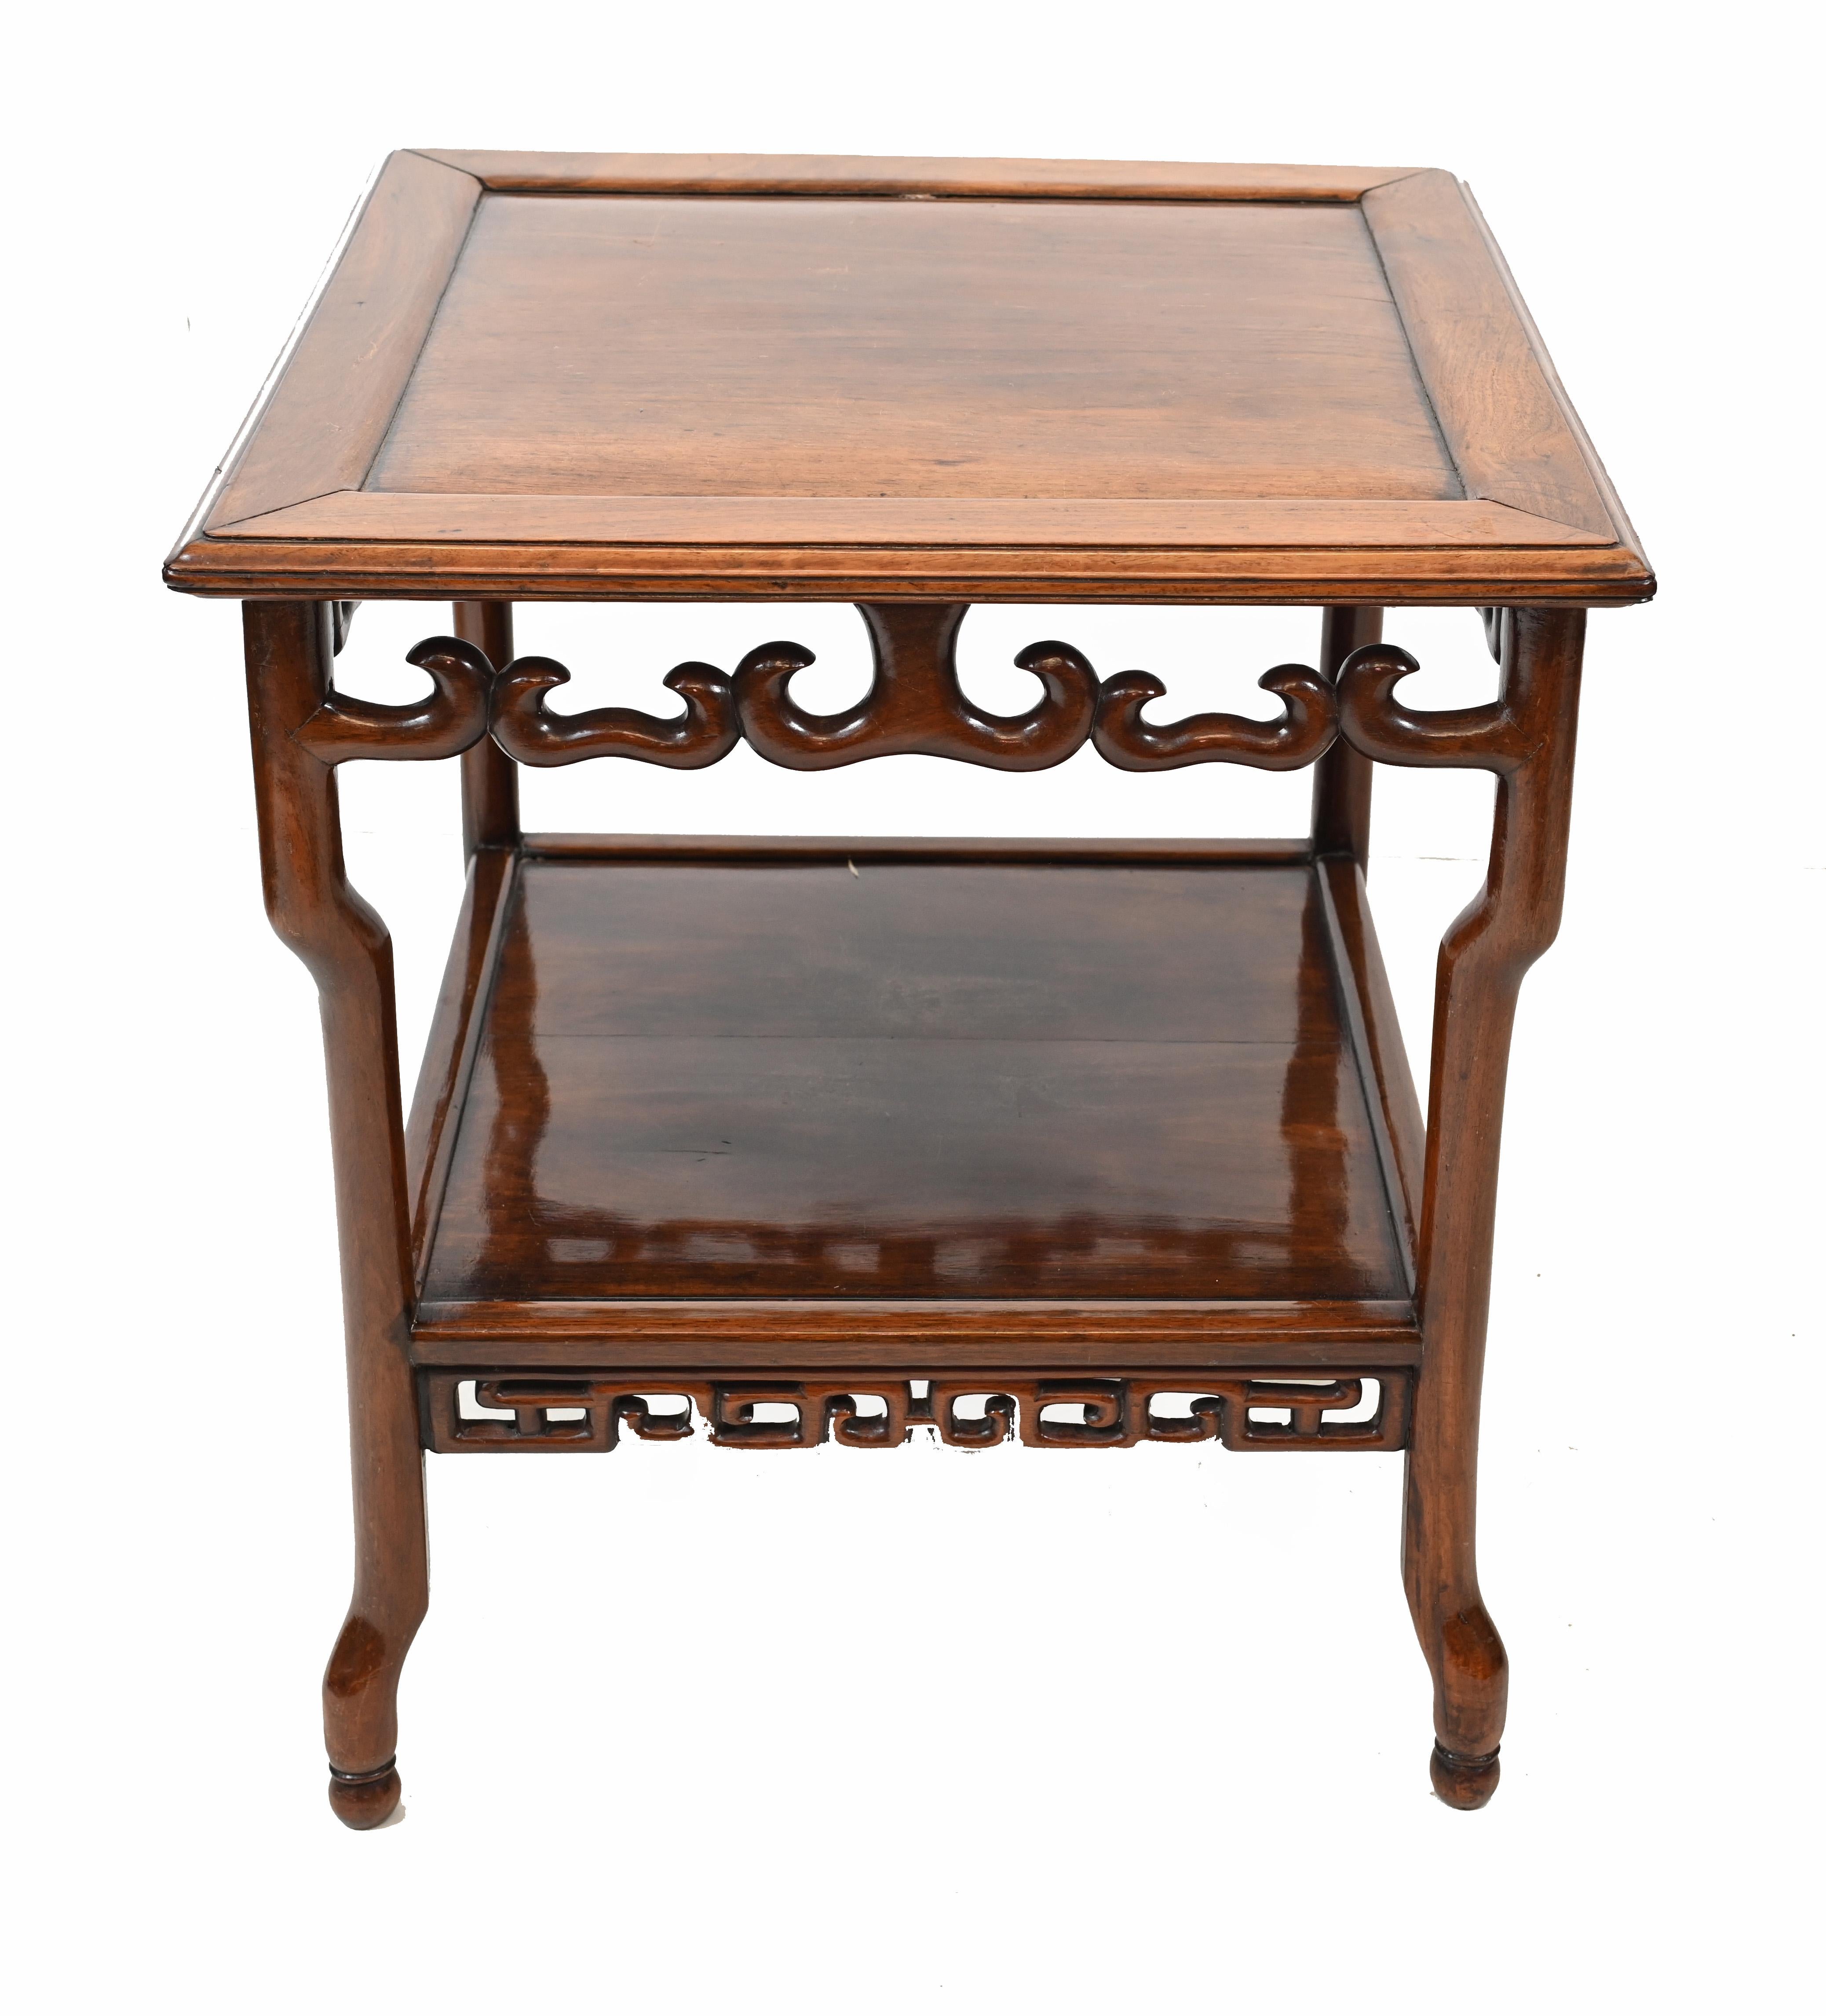 Magnifique table d'appoint chinoise ancienne en bois dur
Nous datons cette pièce d'environ 1880
Des motifs délicats pour les rails et un look idéal pour un intérieur d'inspiration asiatique
 


 